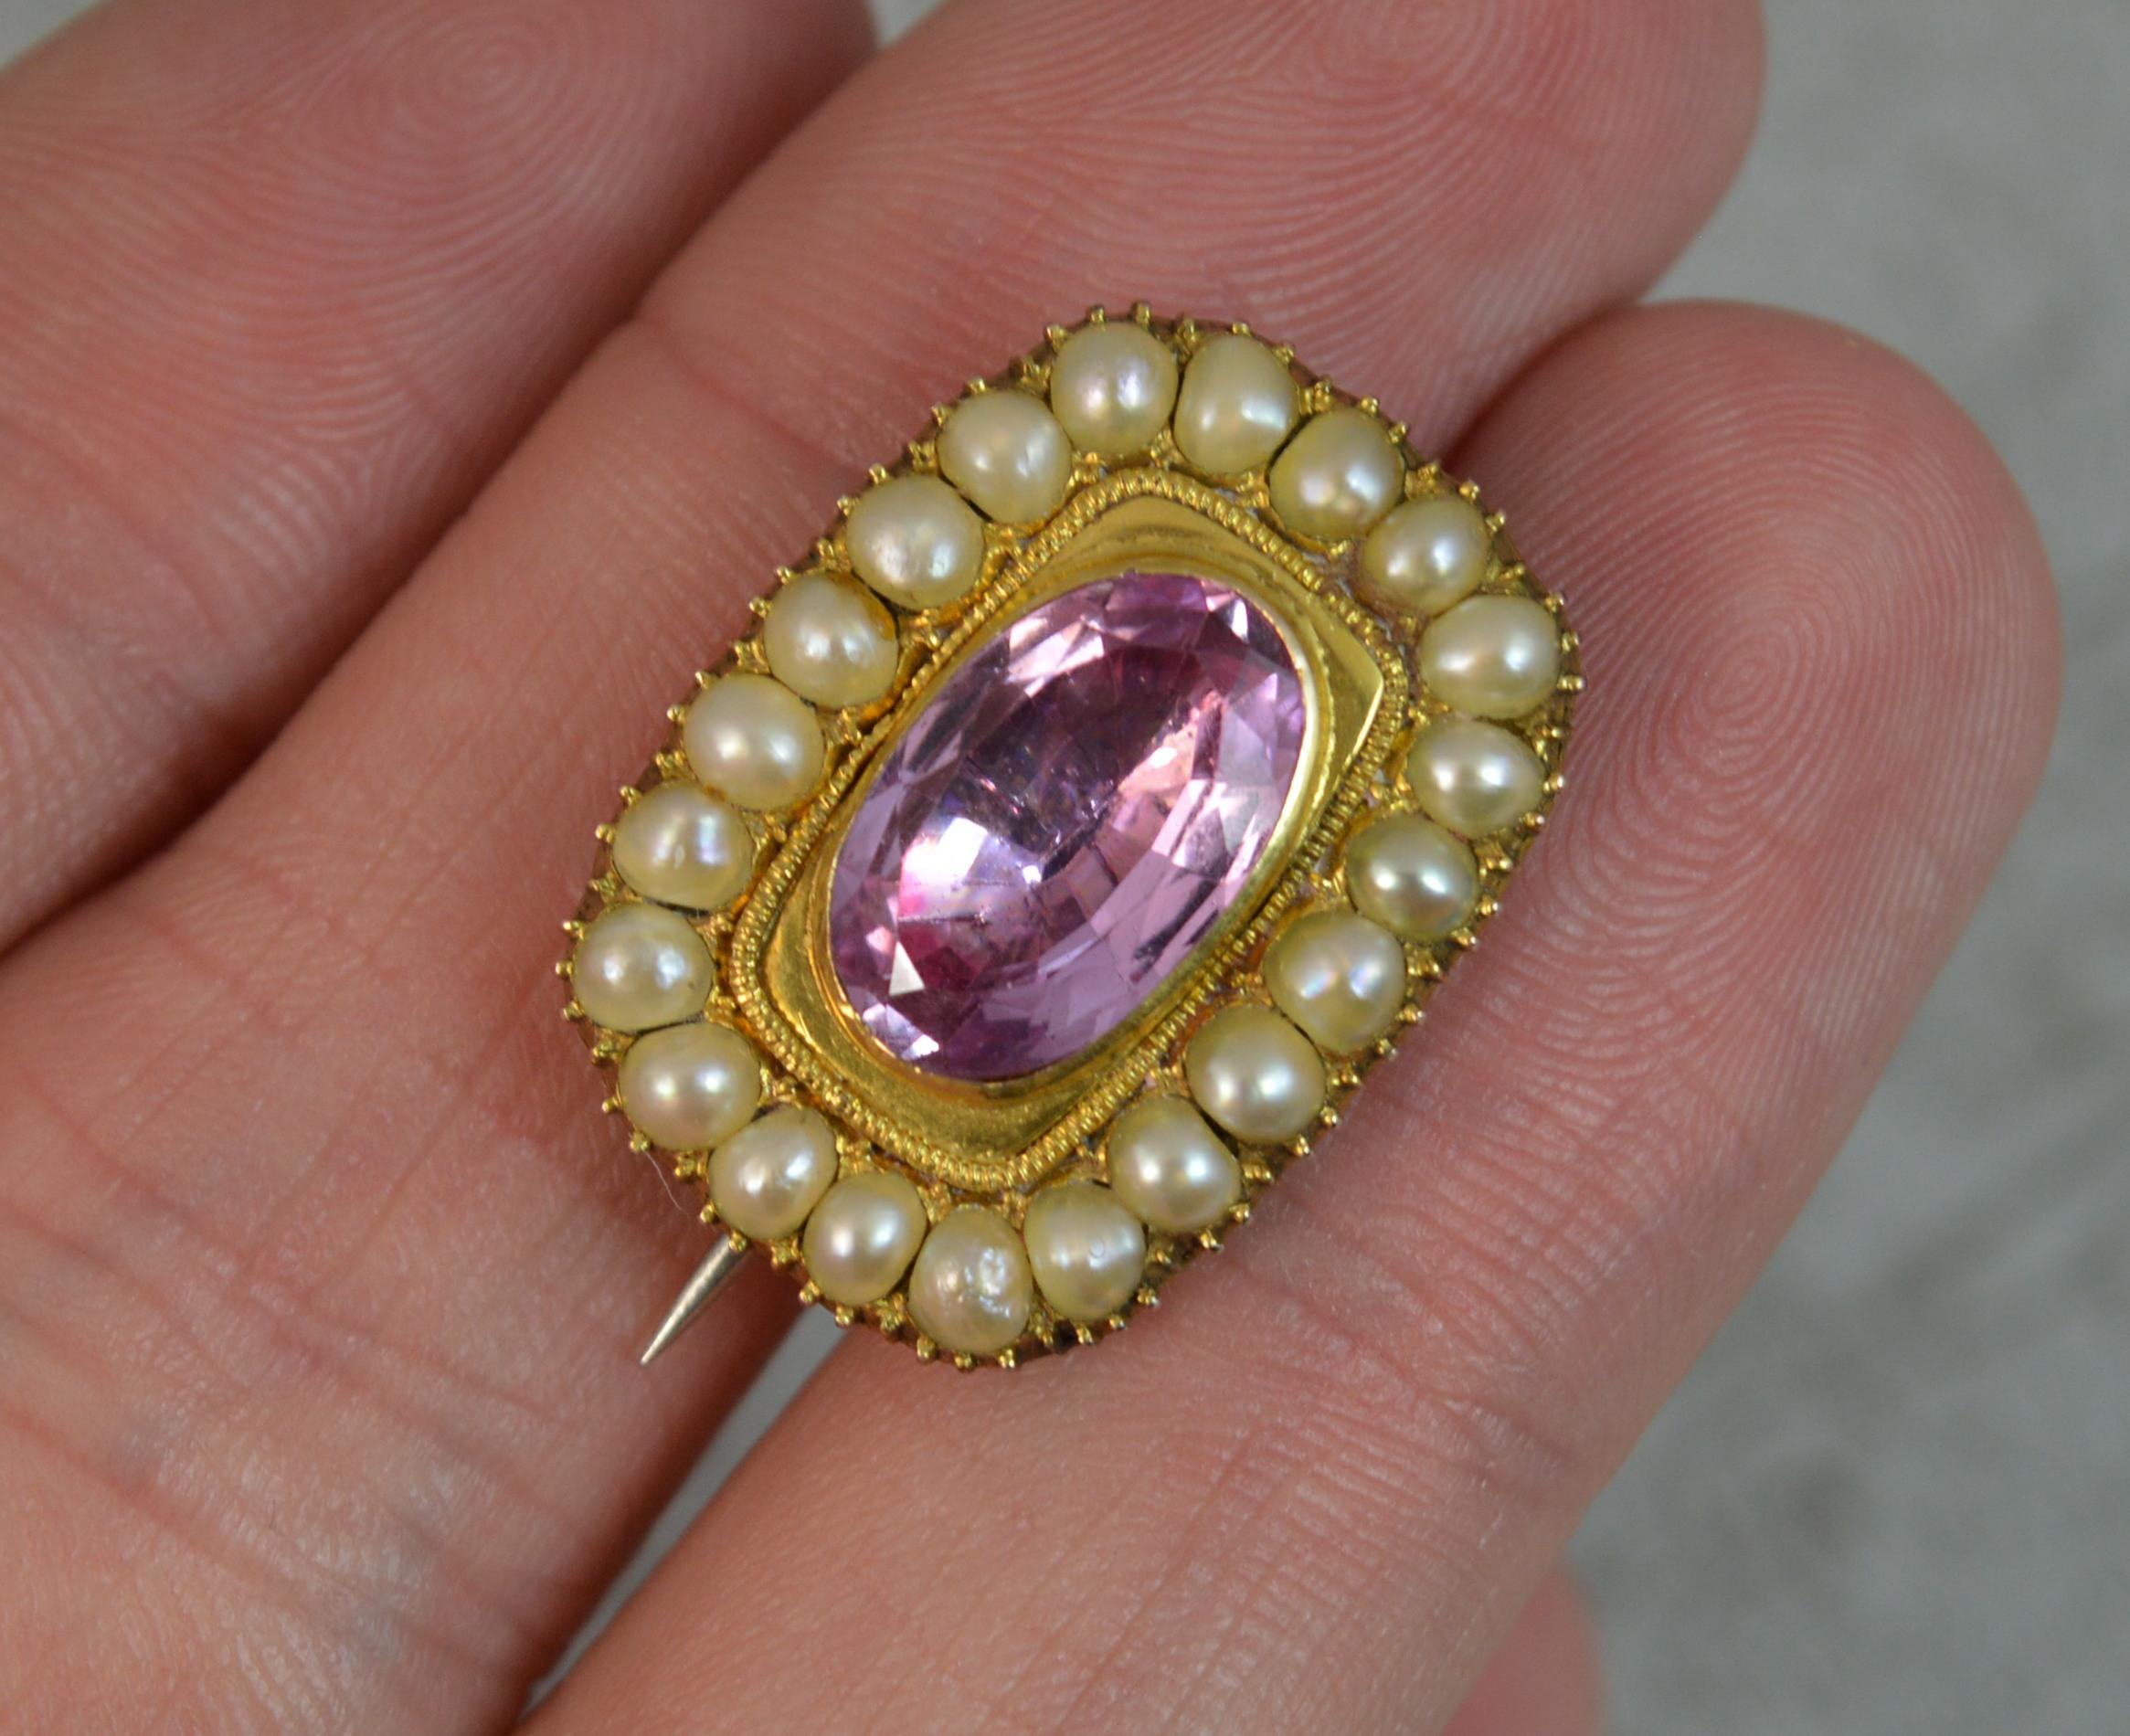 pink pearl brooch